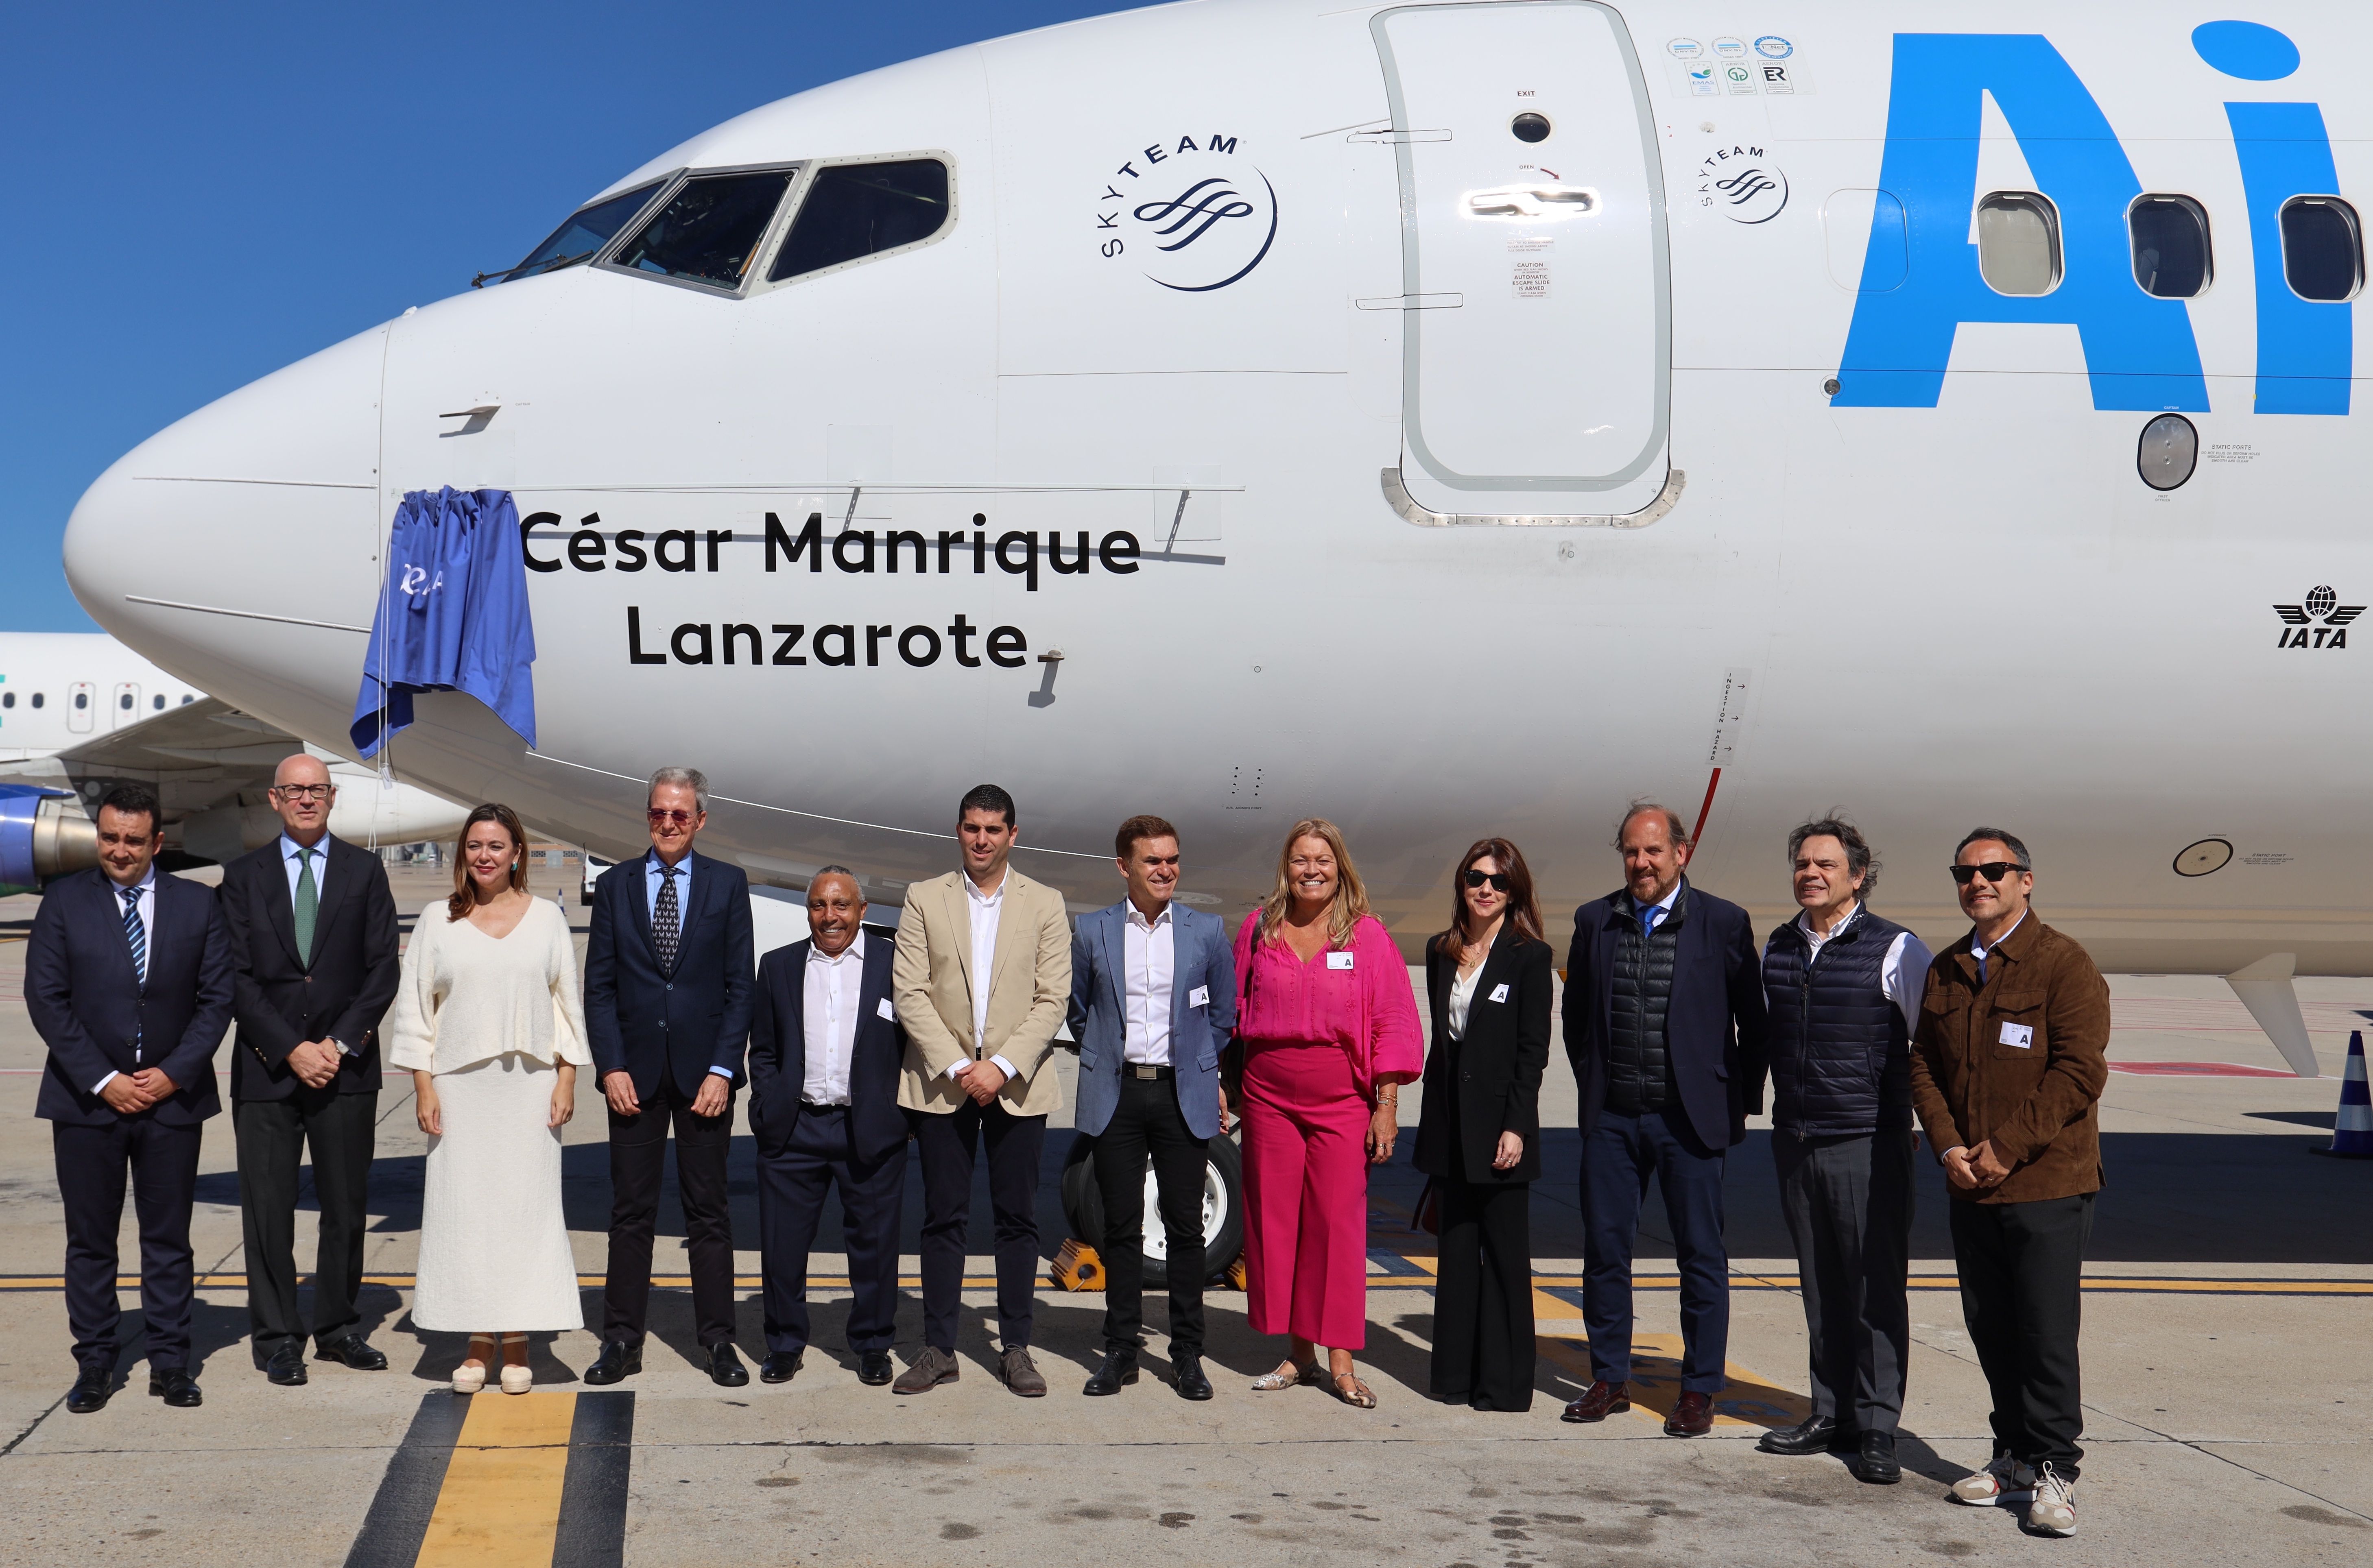 Representantes de Lanzarote y de Air Europa en el "bautismo" del avión que llevará el nombre de César Manrique